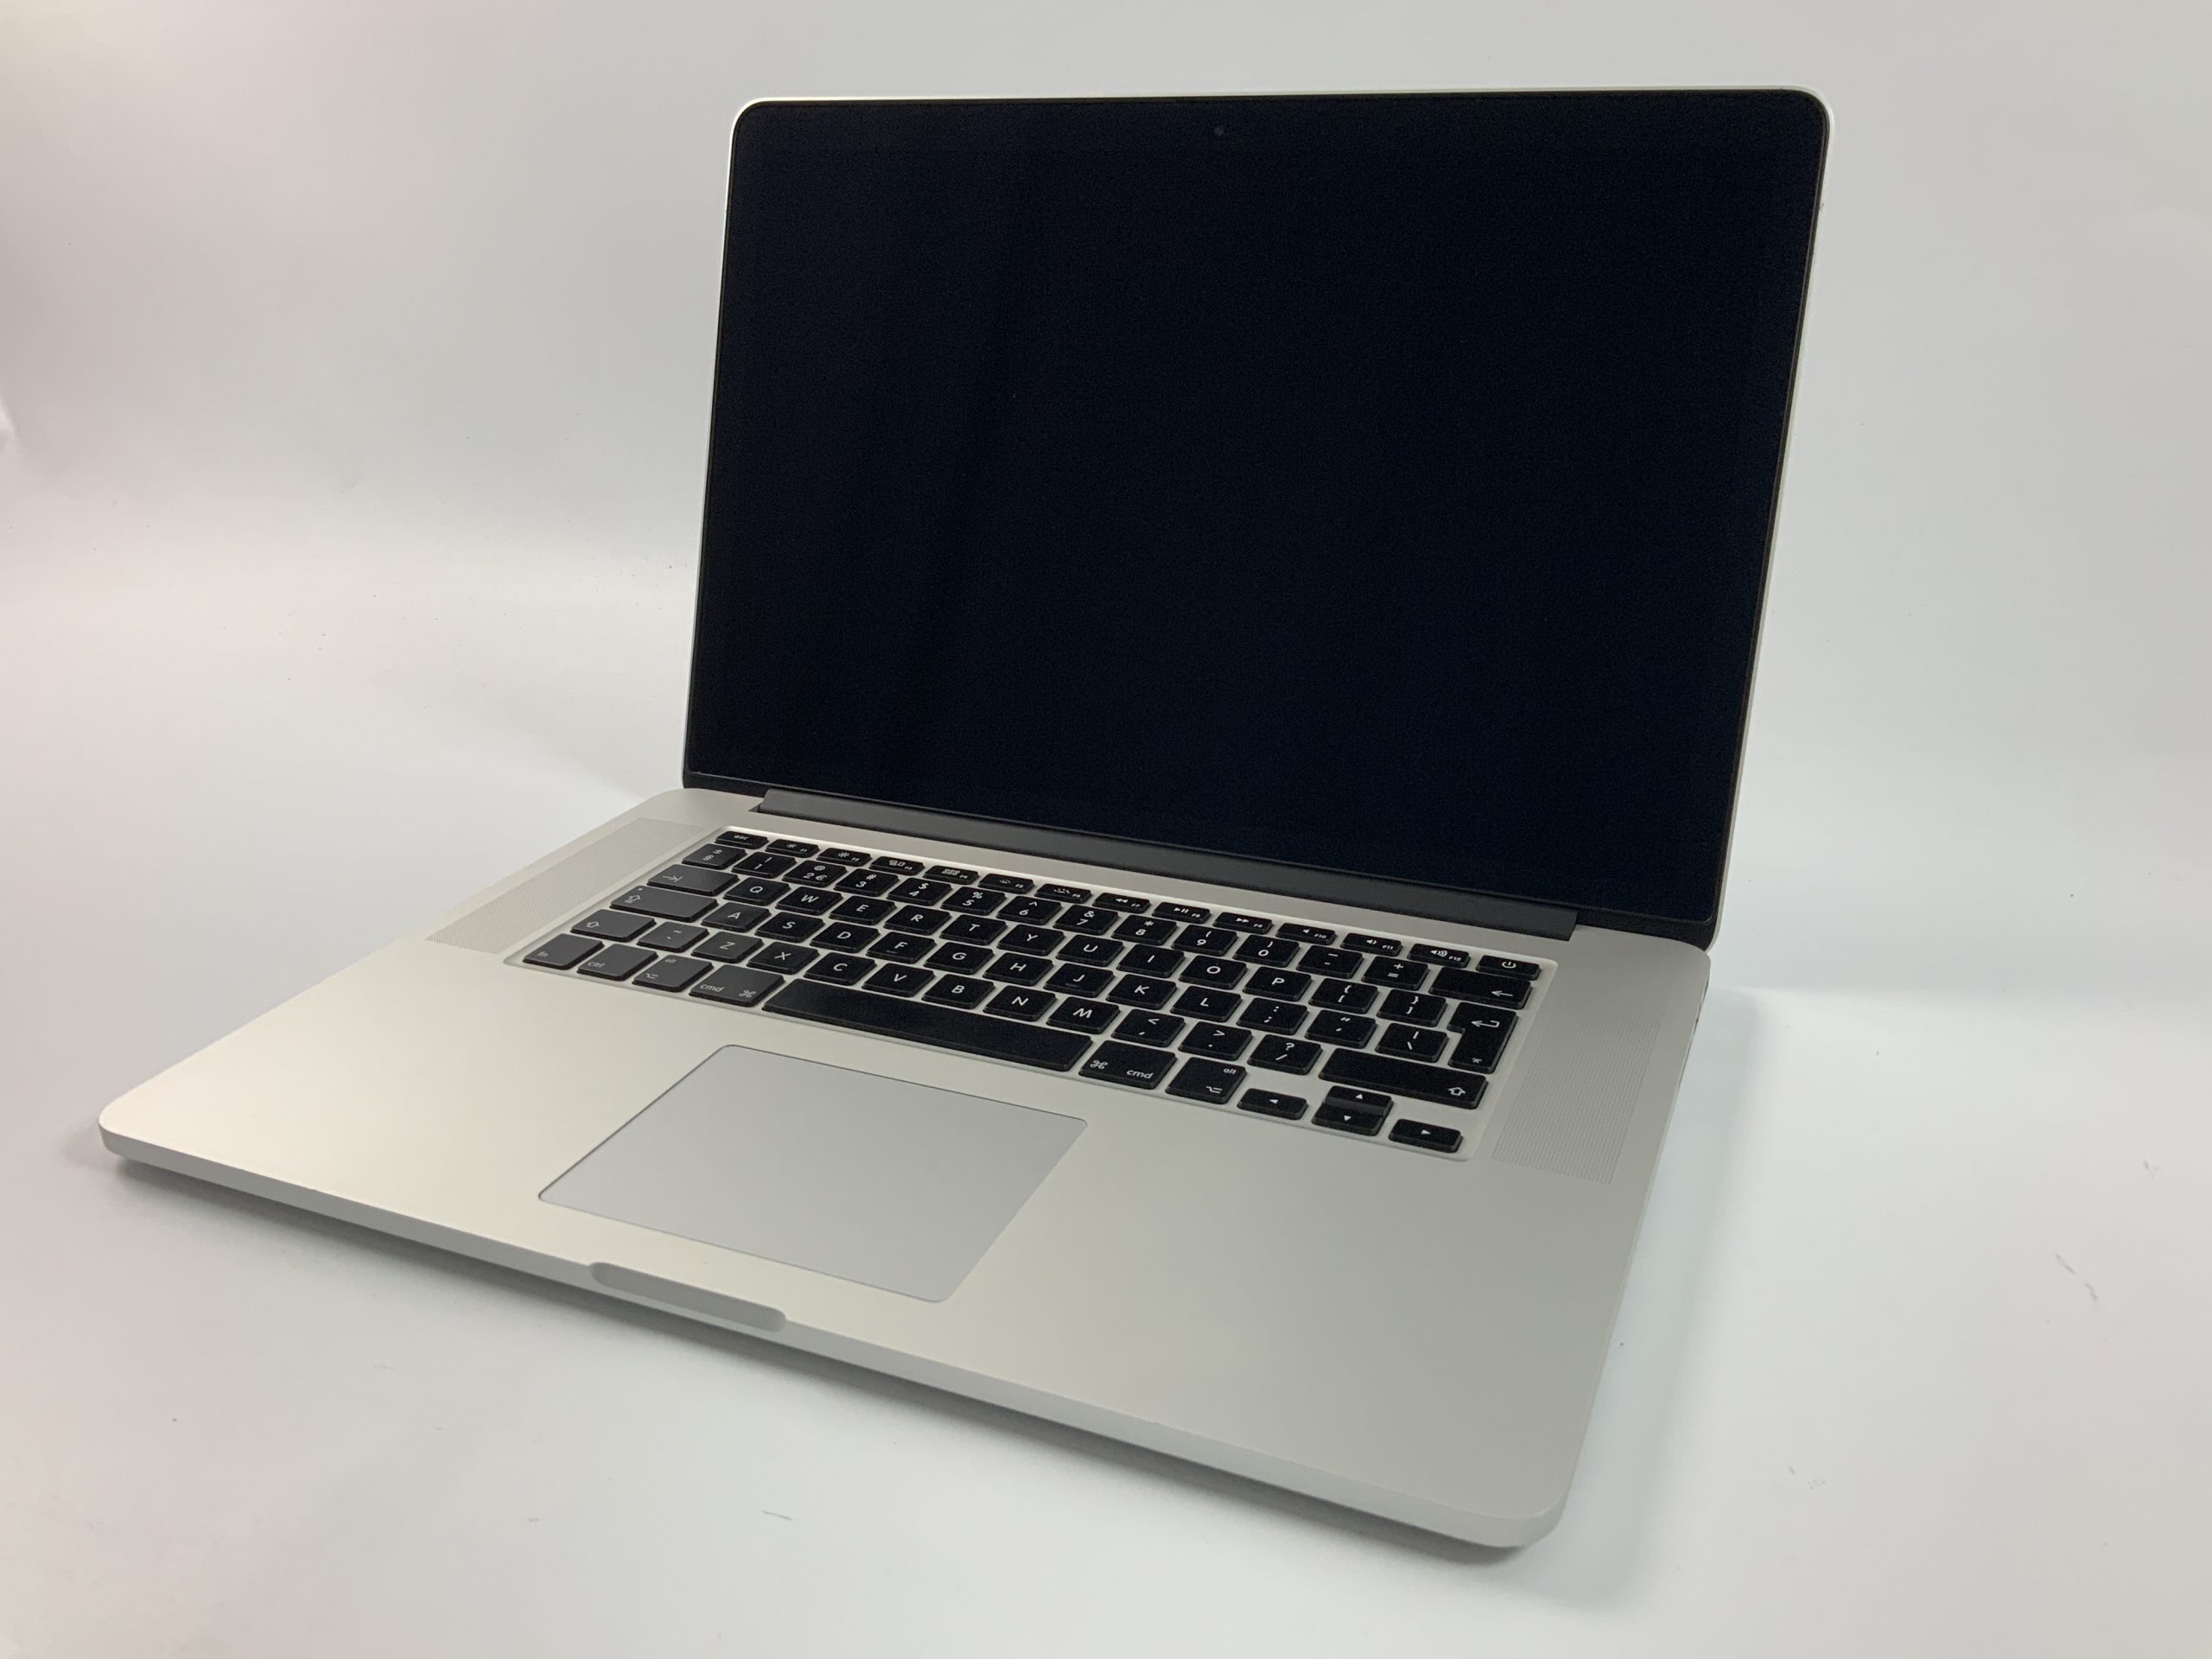 MacBook Pro Retina 15" Mid 2014 (Intel Quad-Core i7 2.5 GHz 16 GB RAM 512 GB SSD), Intel Quad-Core i7 2.5 GHz, 16 GB RAM, 512 GB SSD, Kuva 1